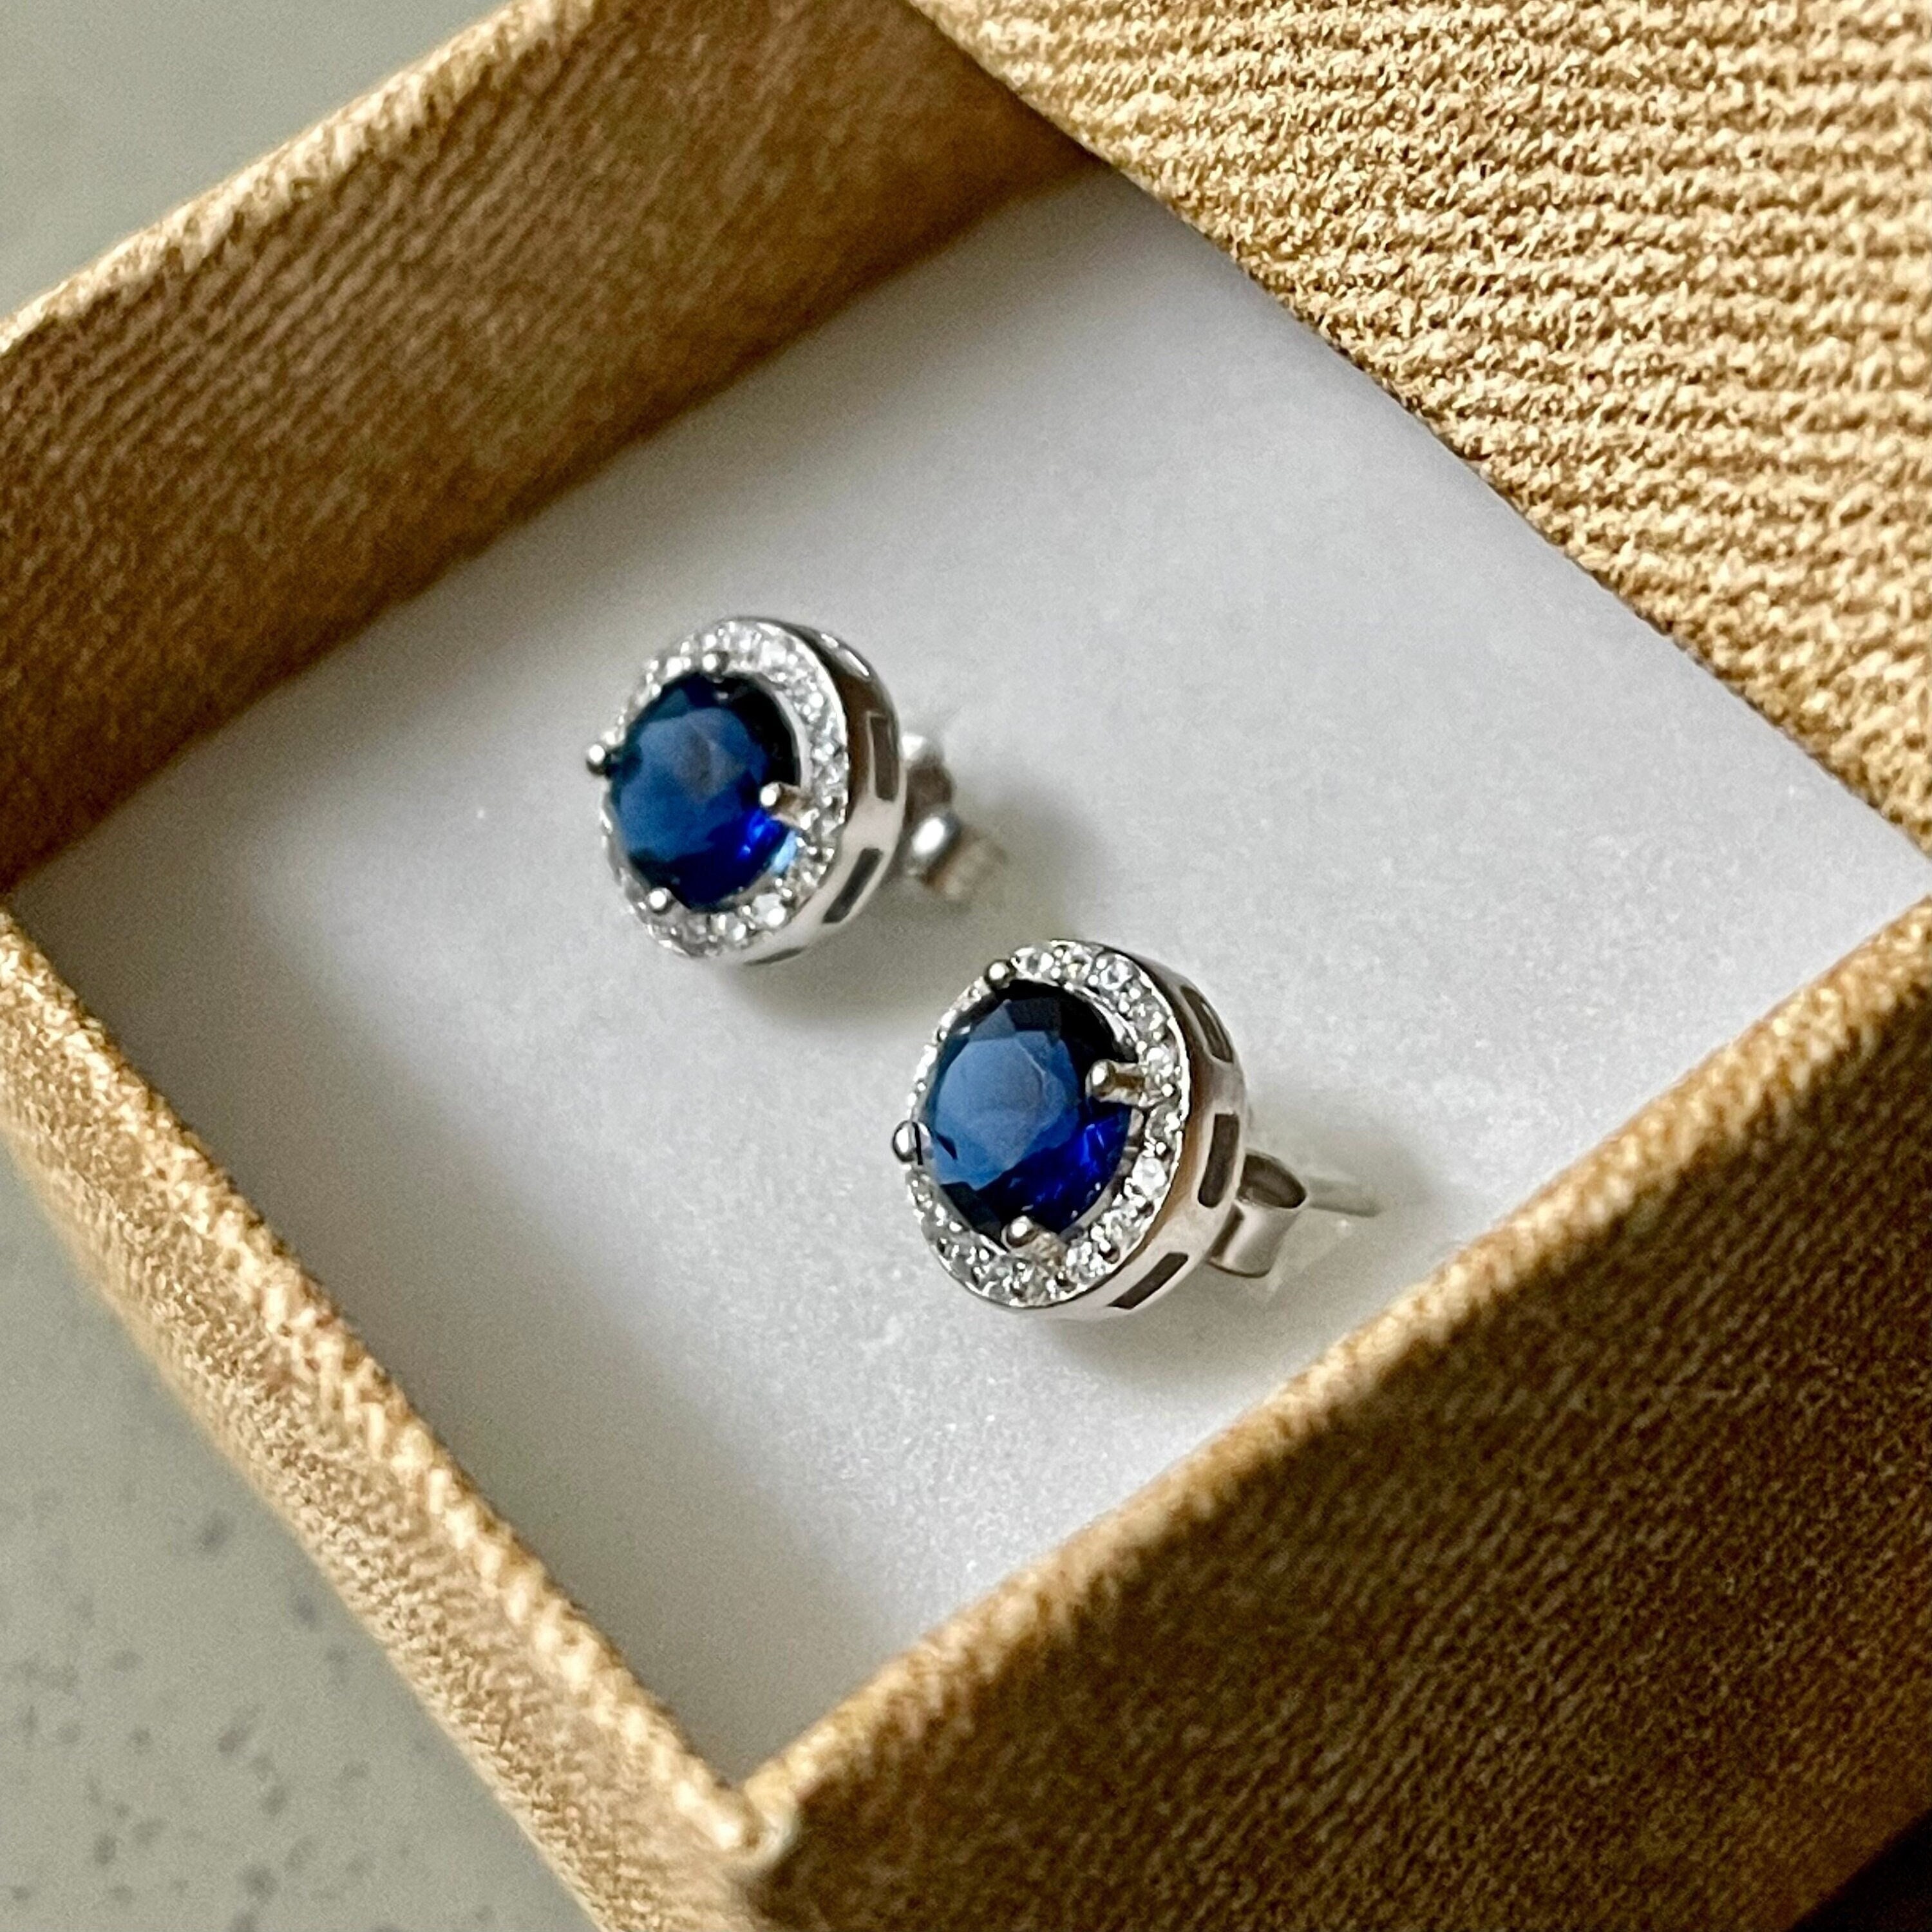 Sapphire Blue Stud Earrings Clear Resin W/metallic Glitter Clover